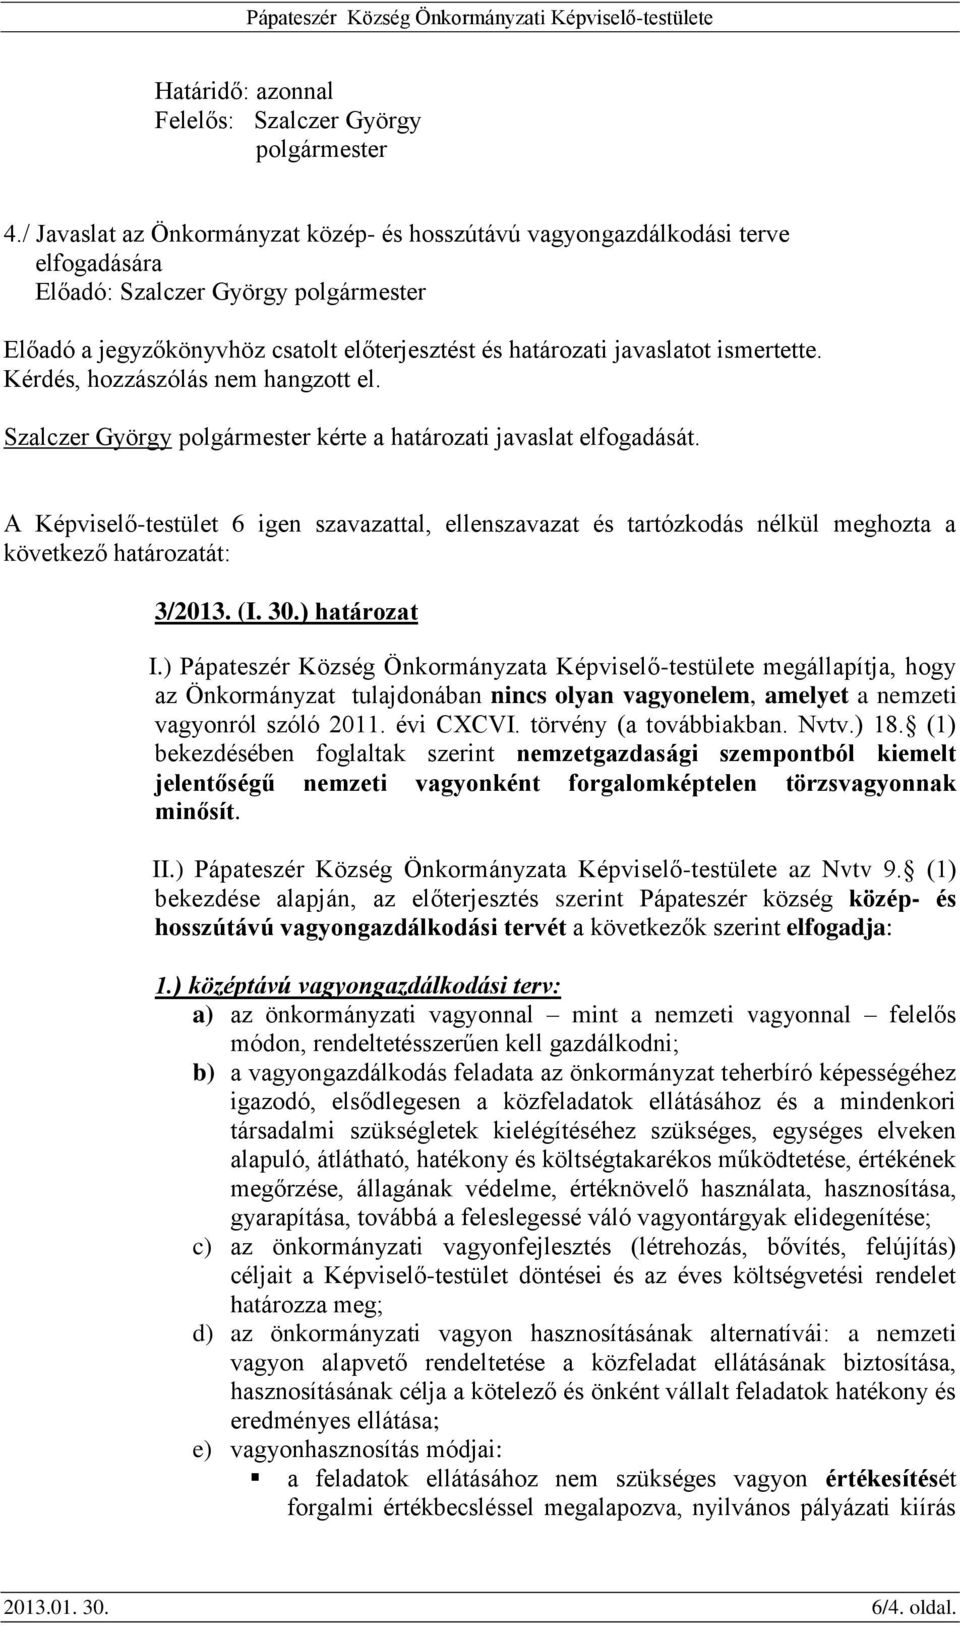 Szalczer György polgármester kérte a határozati javaslat elfogadását. 3/2013. (I. 30.) határozat I.